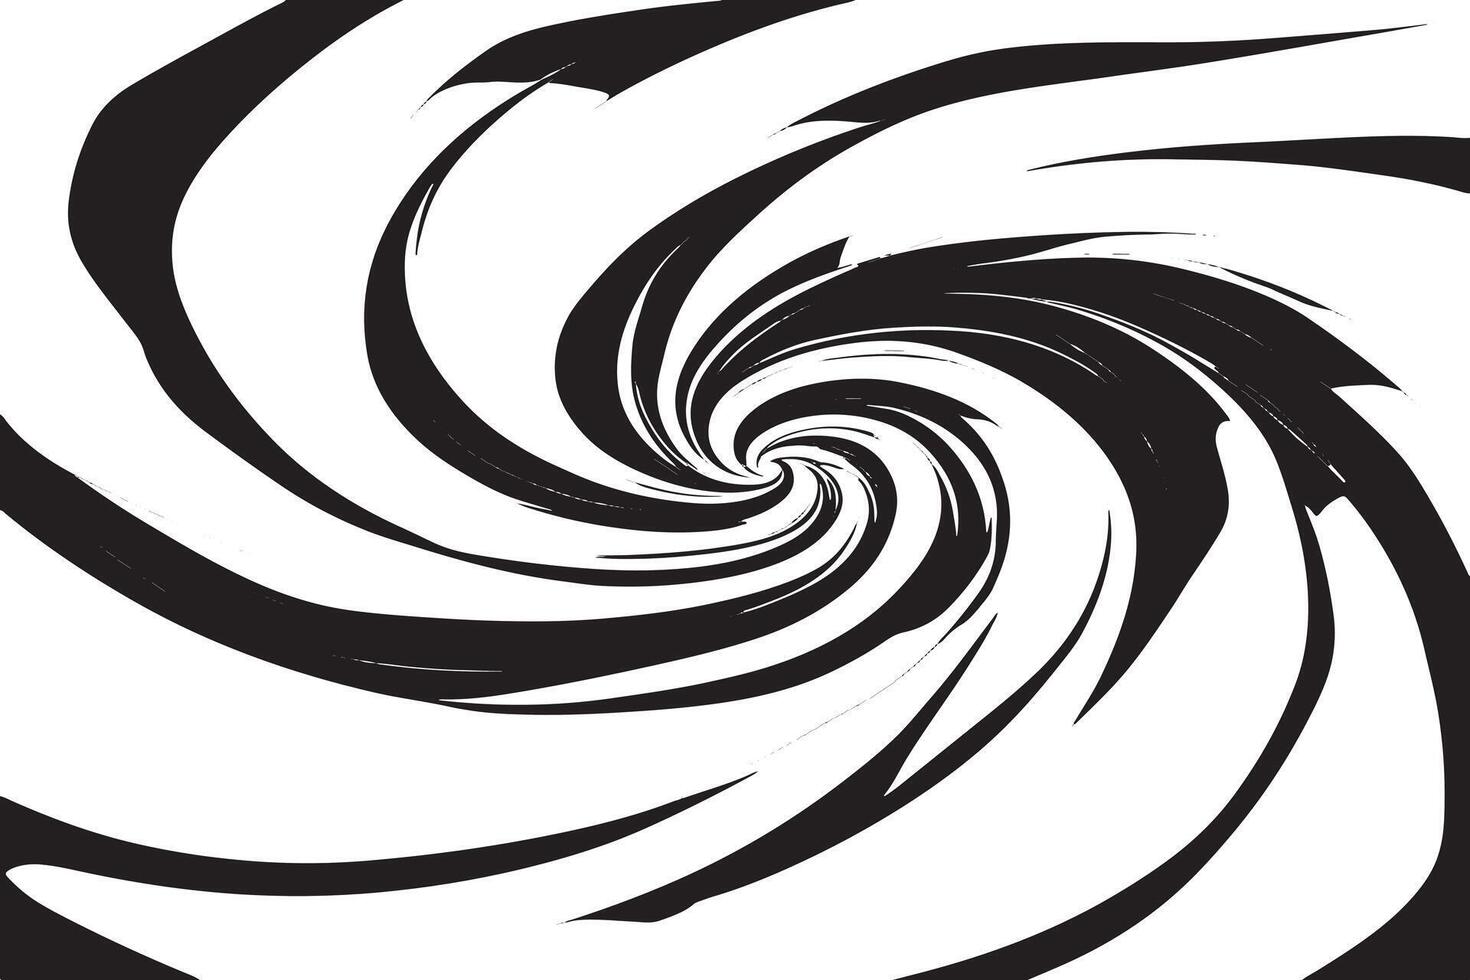 dynamique monochrome captivant dans le sens inverse des aiguilles d'une montre archimédien spirale déploiement sur neige blanc Toile vecteur